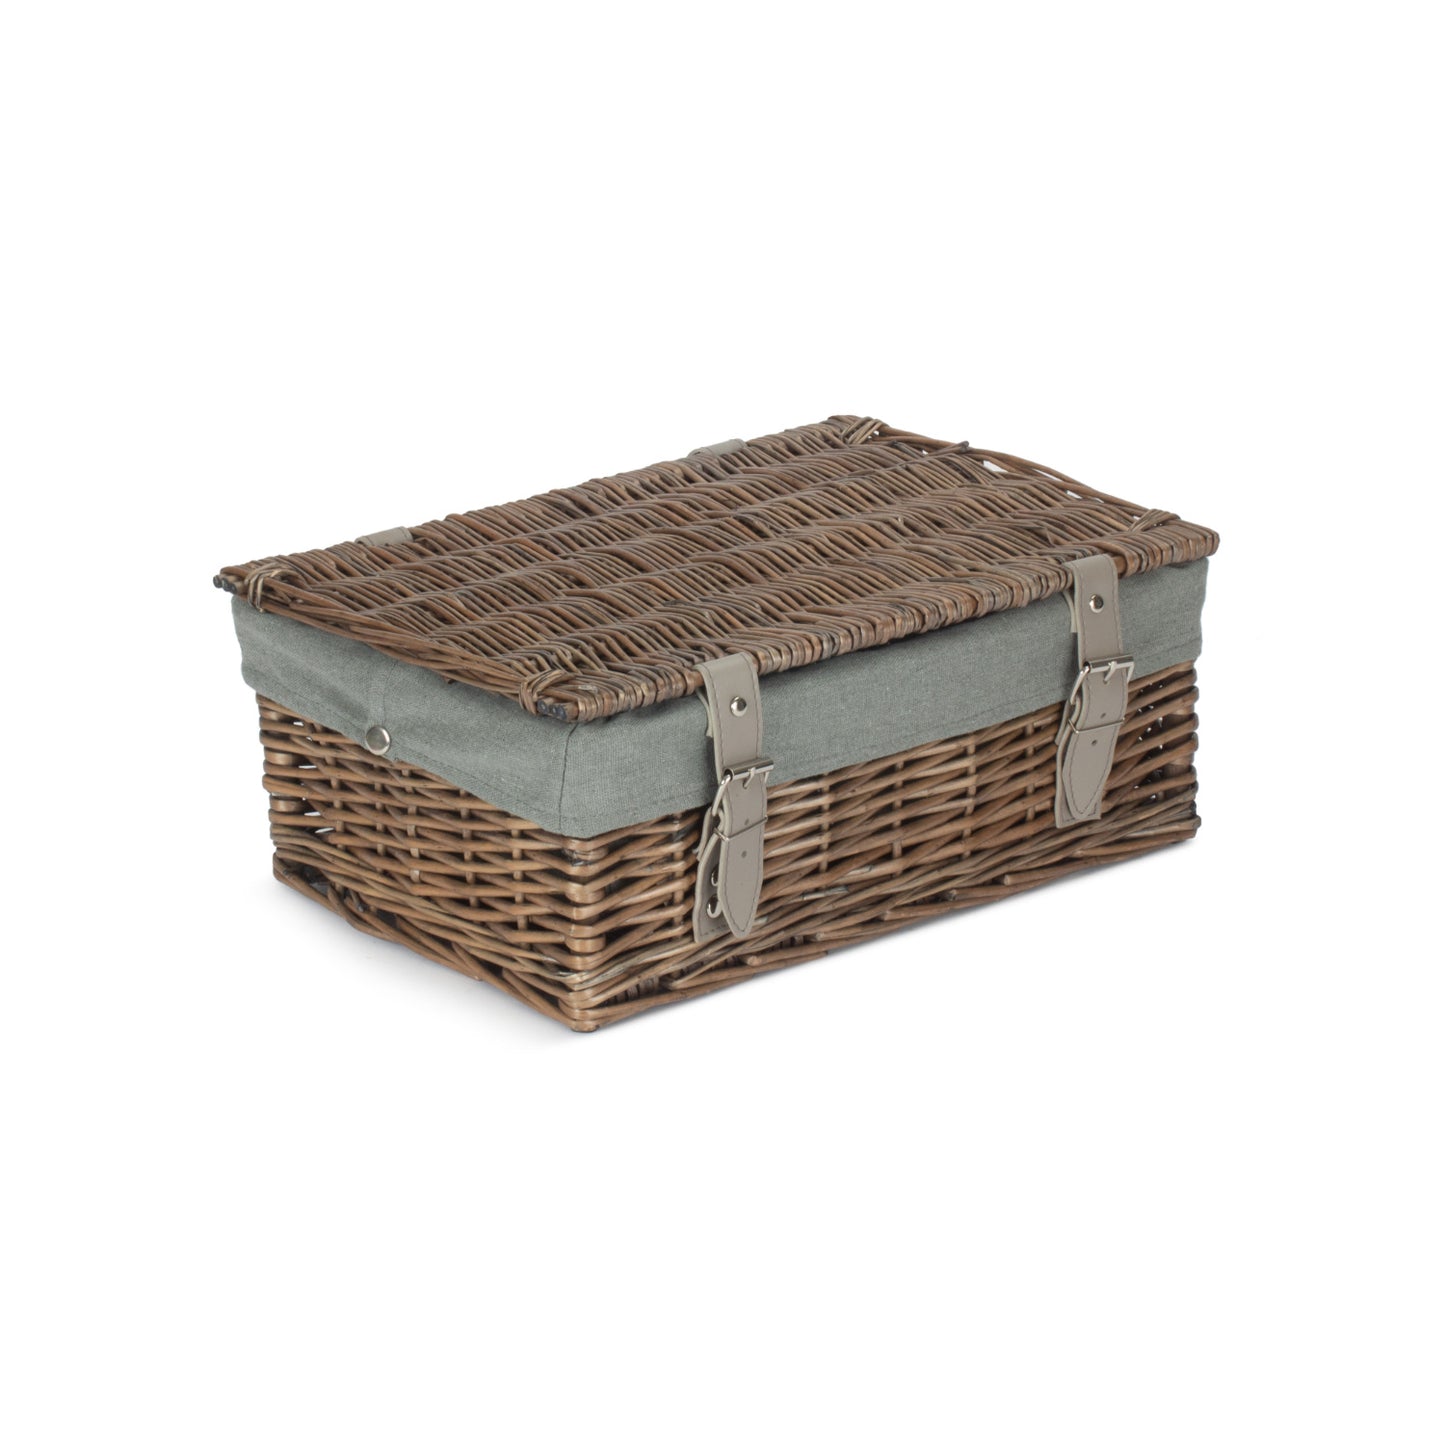 14 Inch Empty Wicker Hamper Basket - Antique Wash - Grey Sage Lining